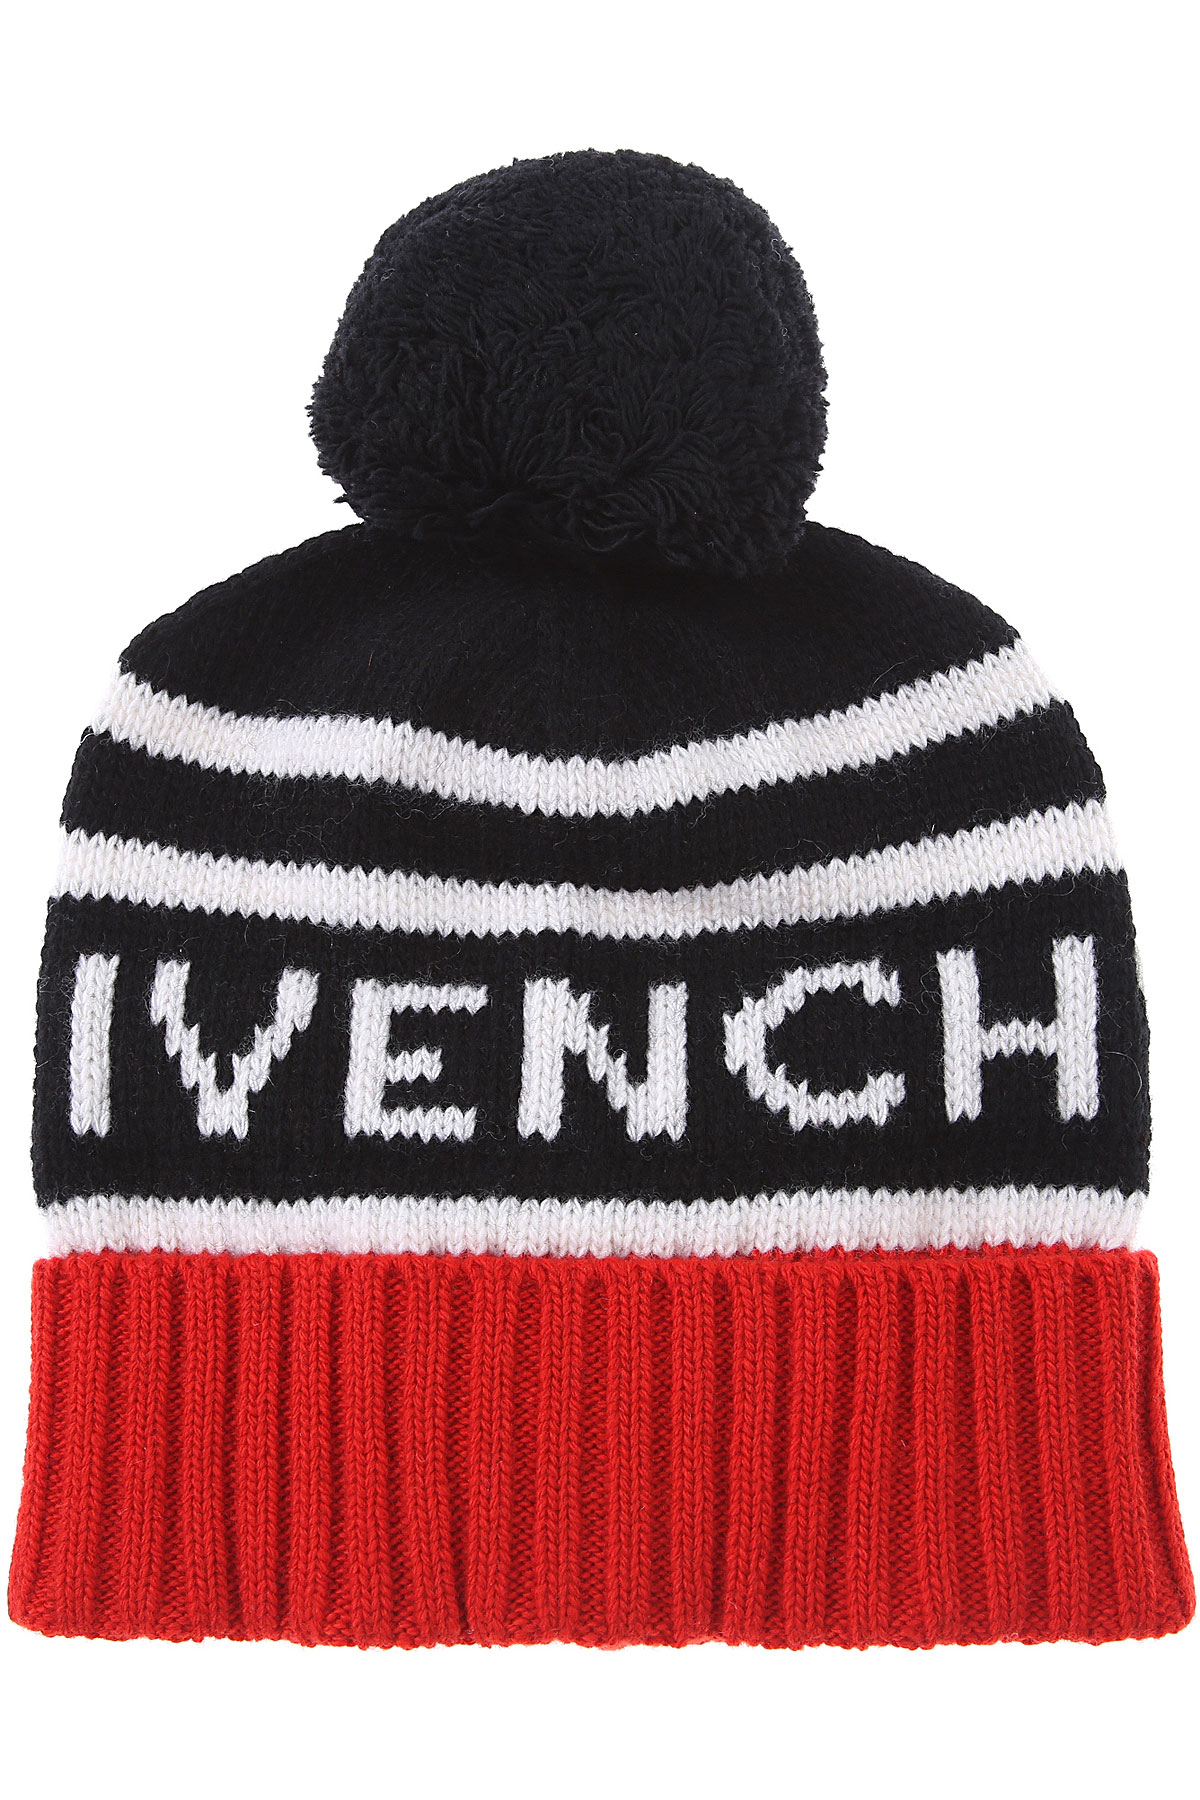 Givenchy Kinder Hut für Jungen Günstig im Sale, Rot, Wolle, 2017